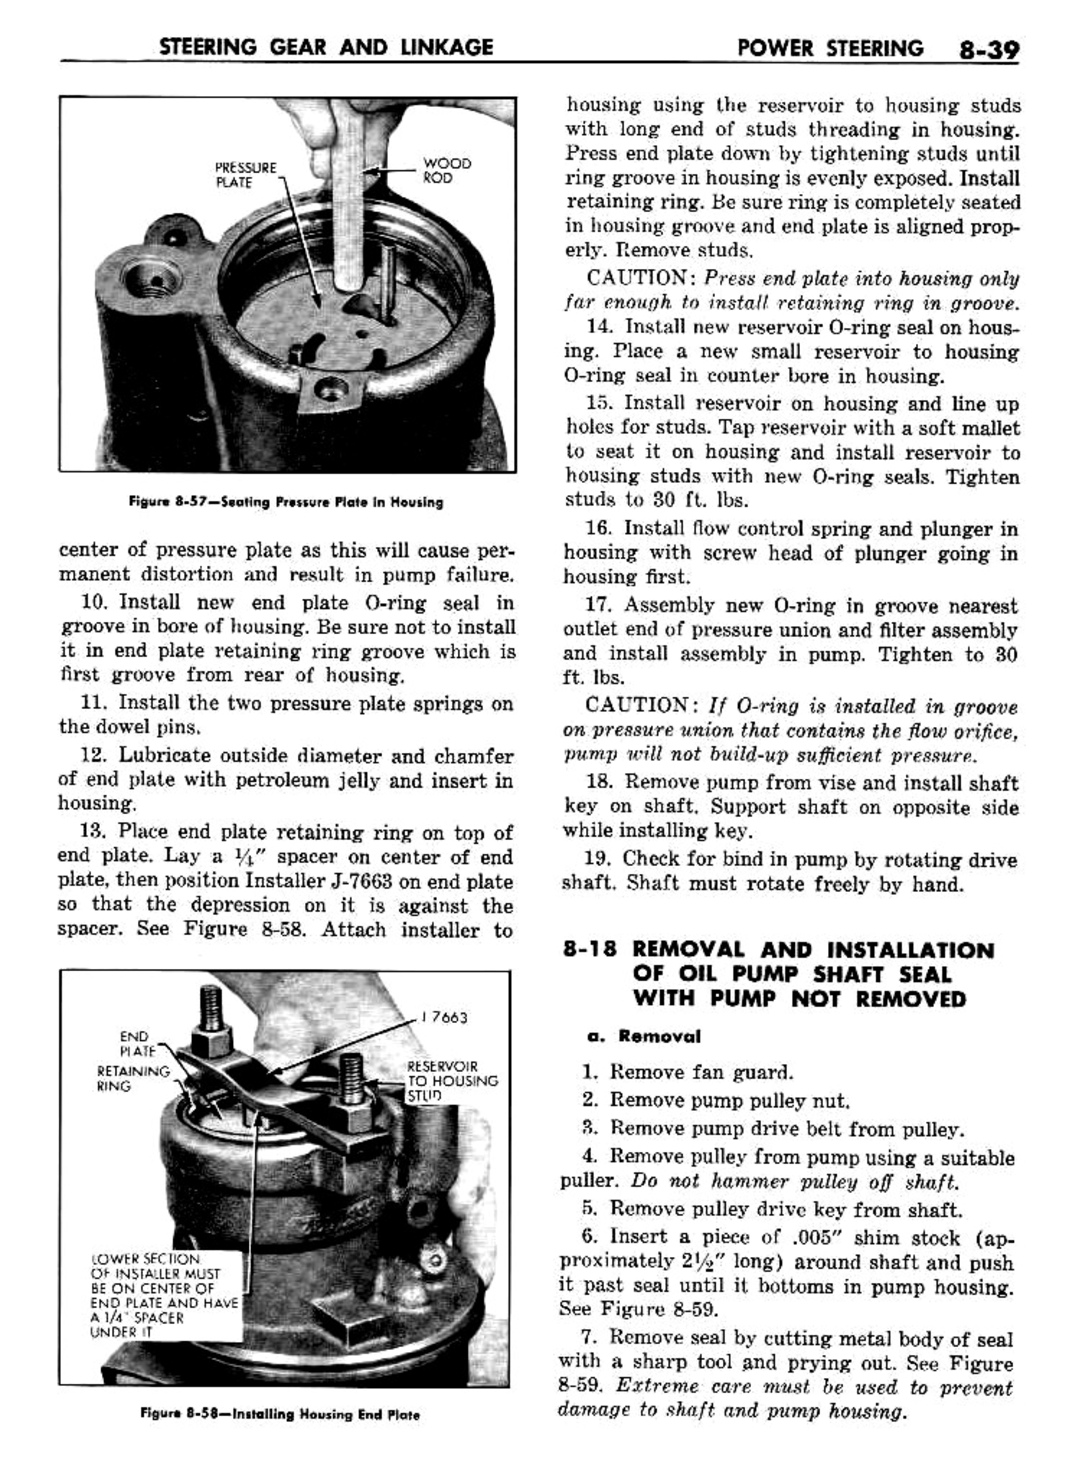 n_09 1960 Buick Shop Manual - Steering-039-039.jpg